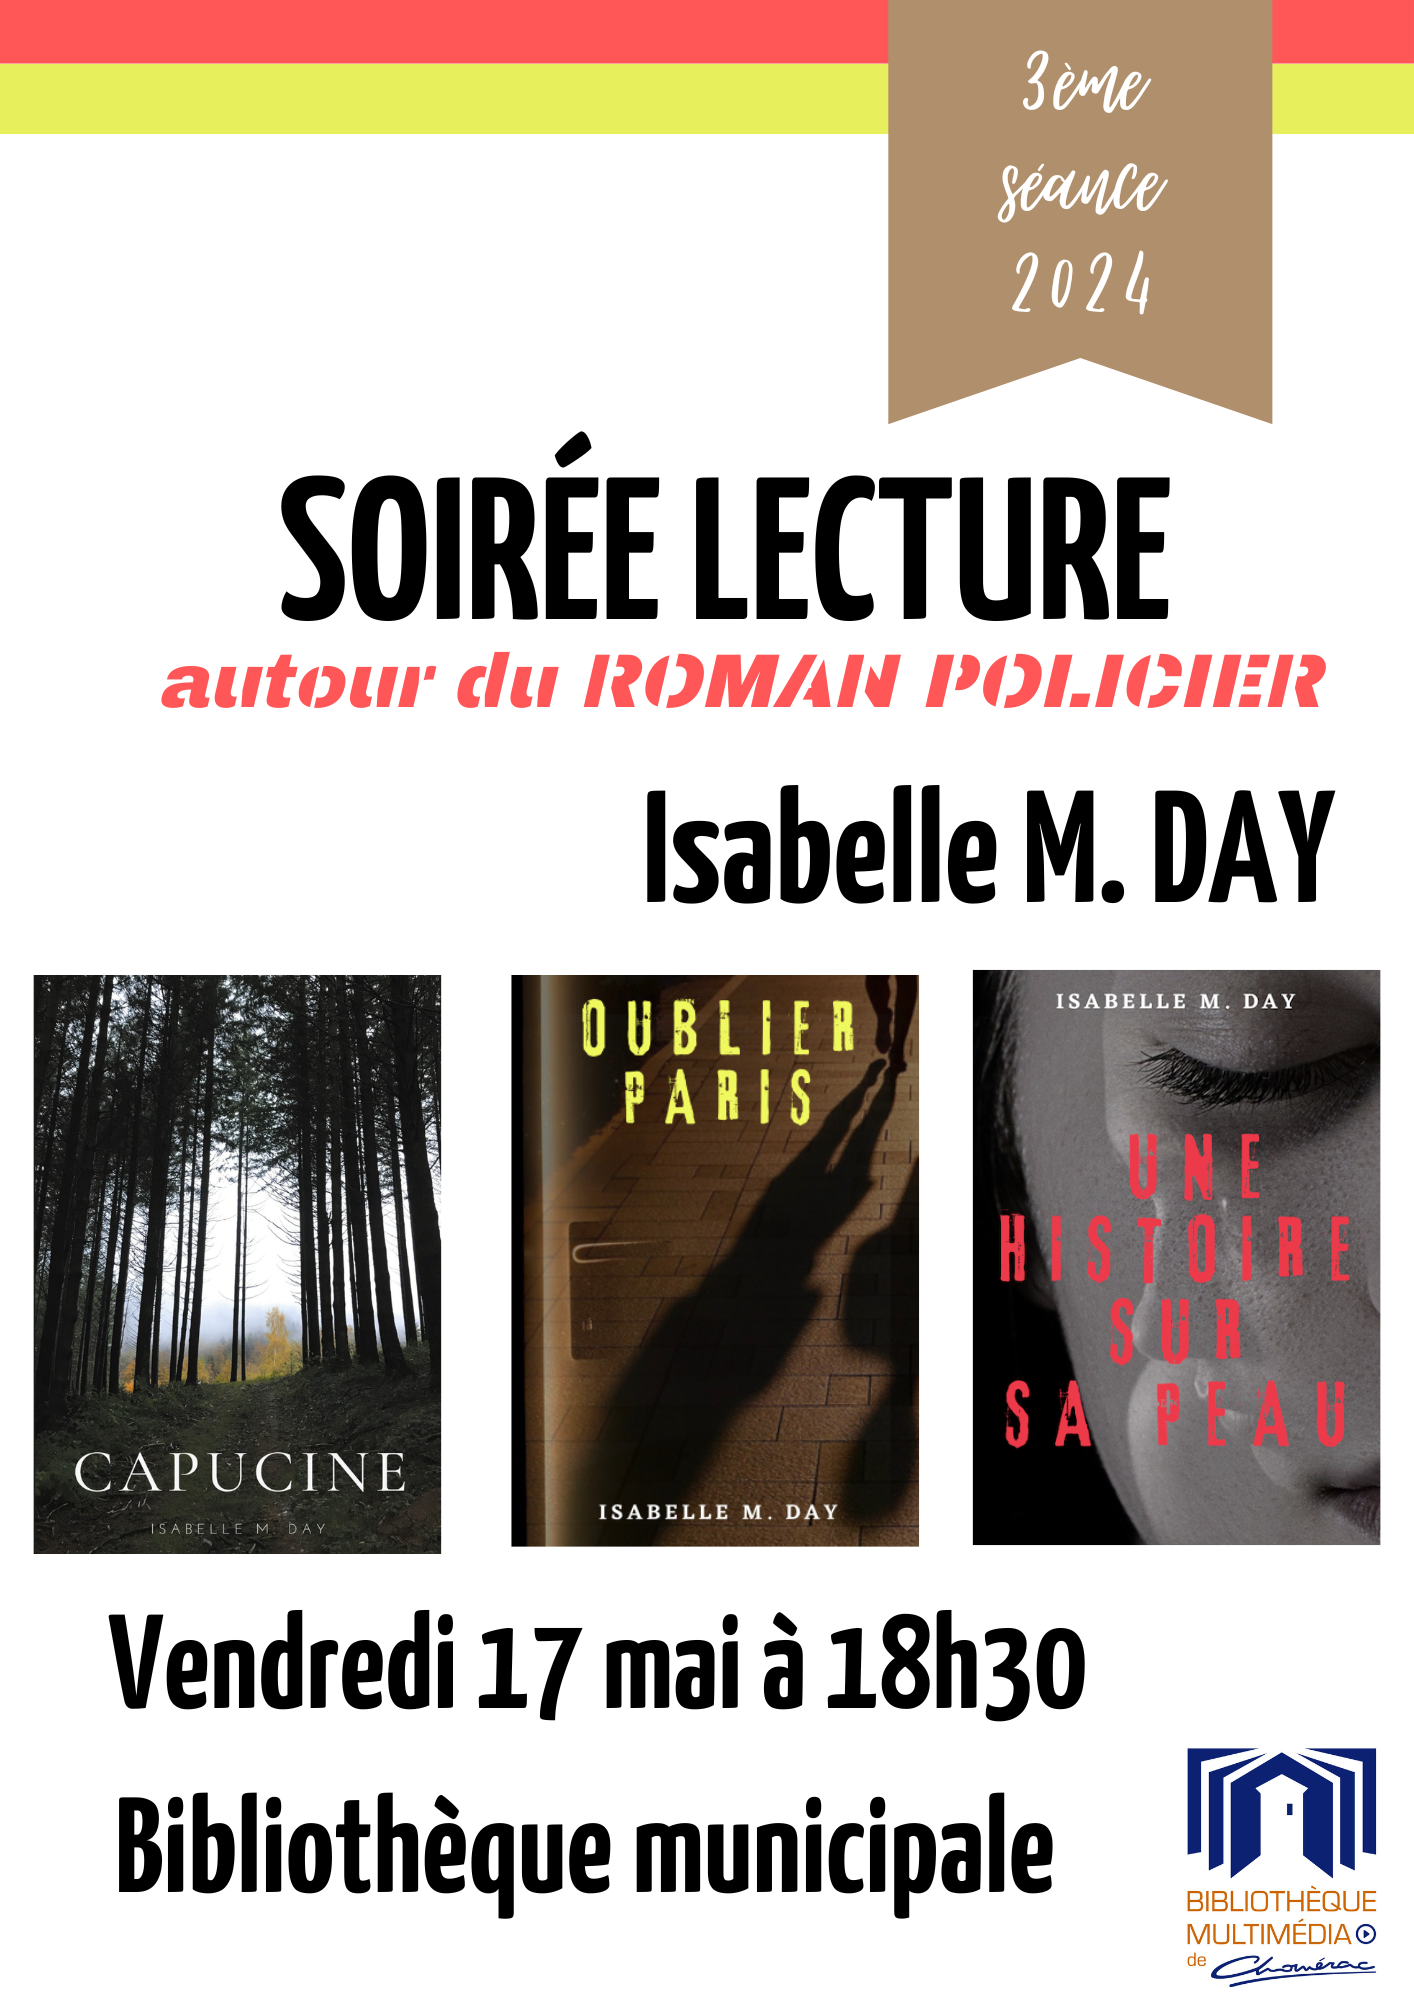 Alle leuke evenementen! : Soirée lecture Isabelle M.DAY